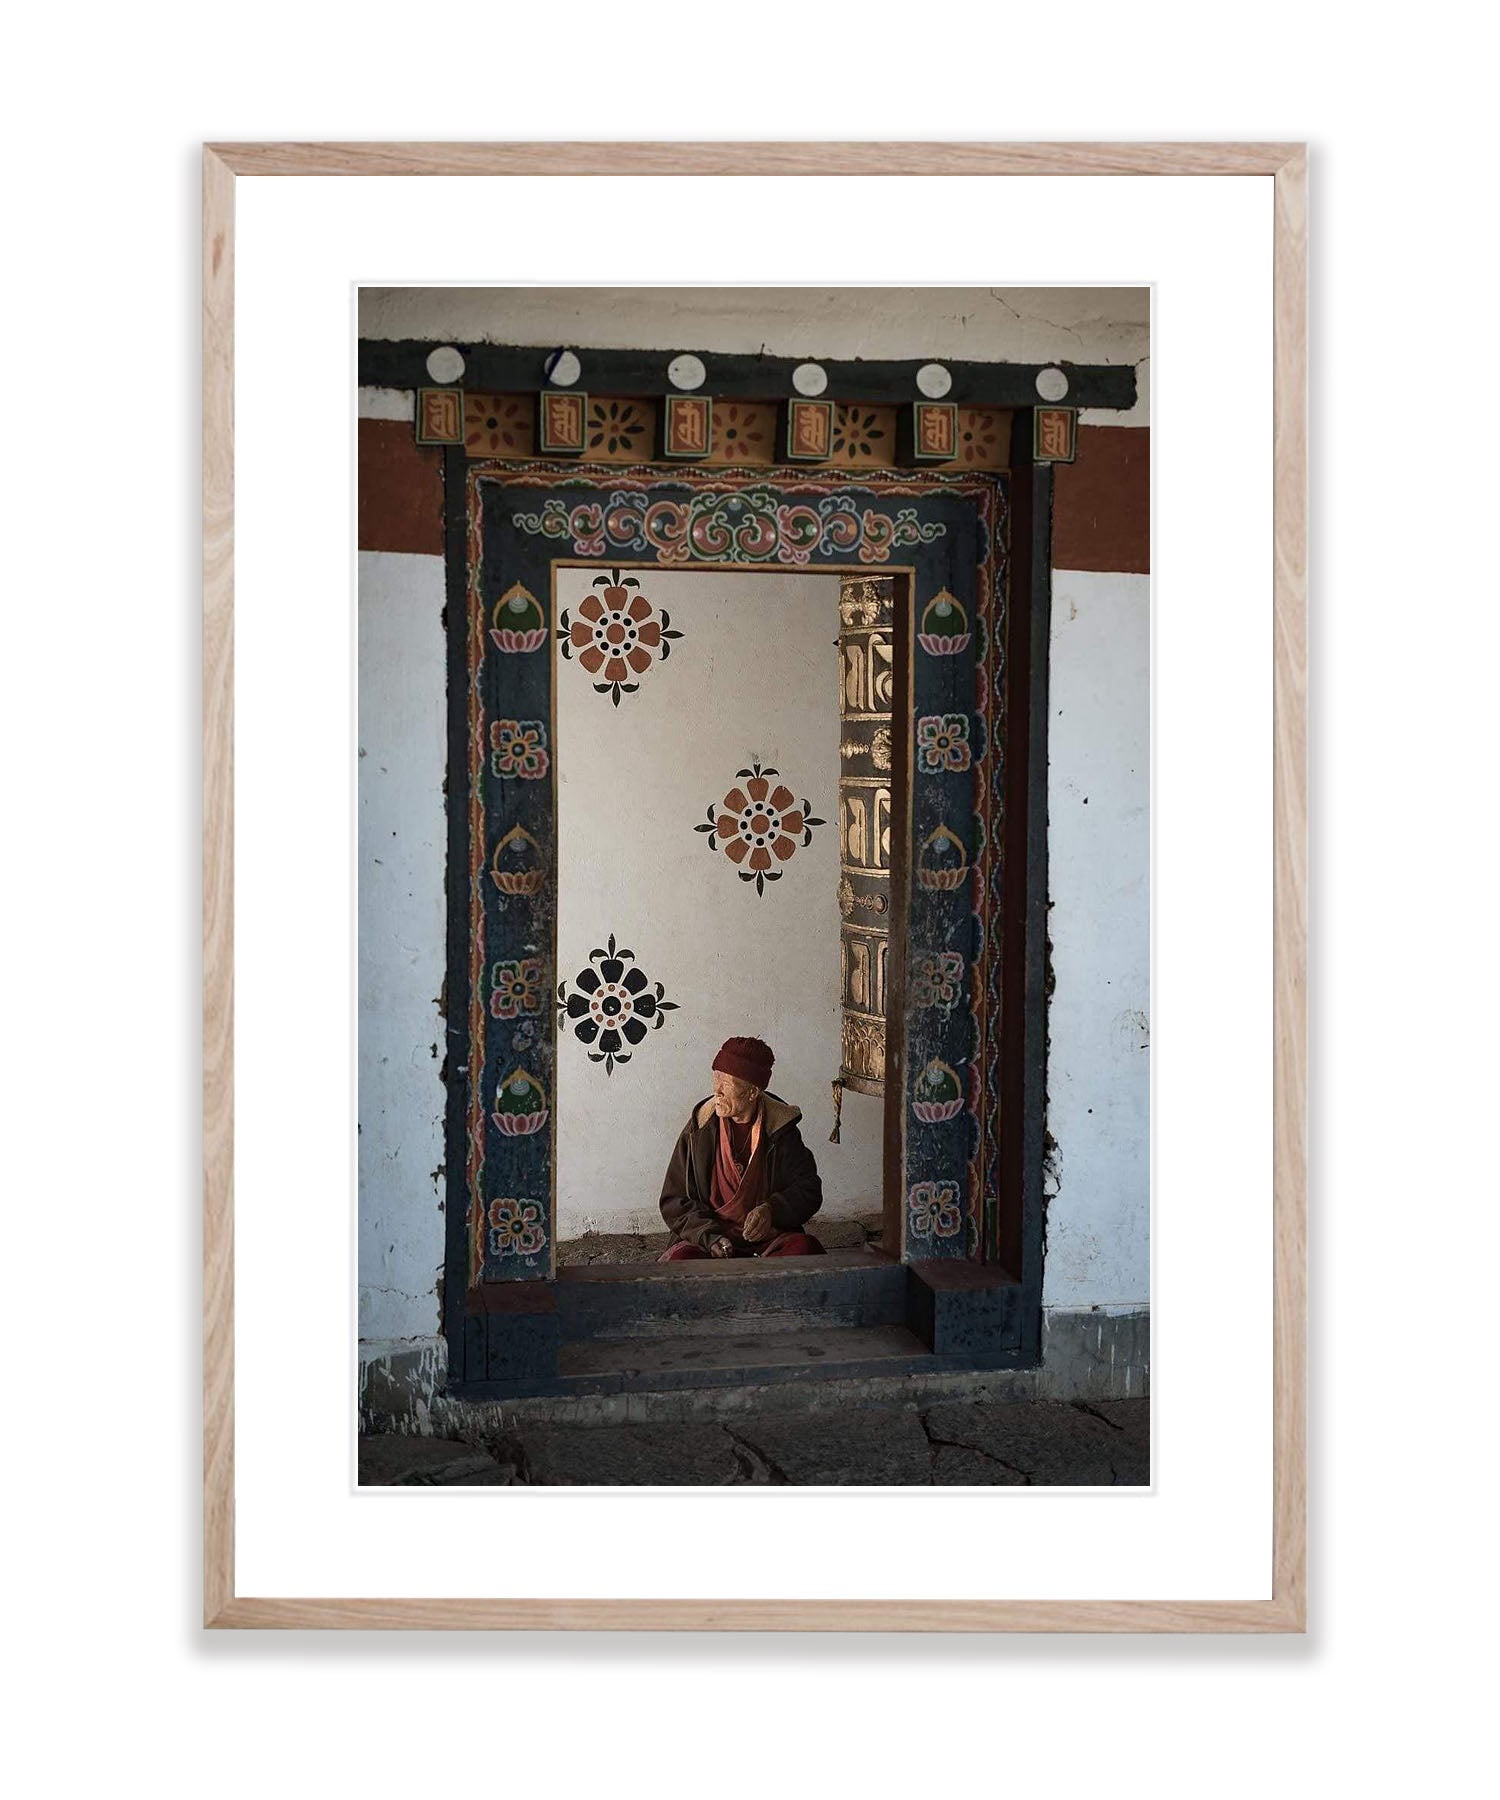 Monk Praying, Bhutan